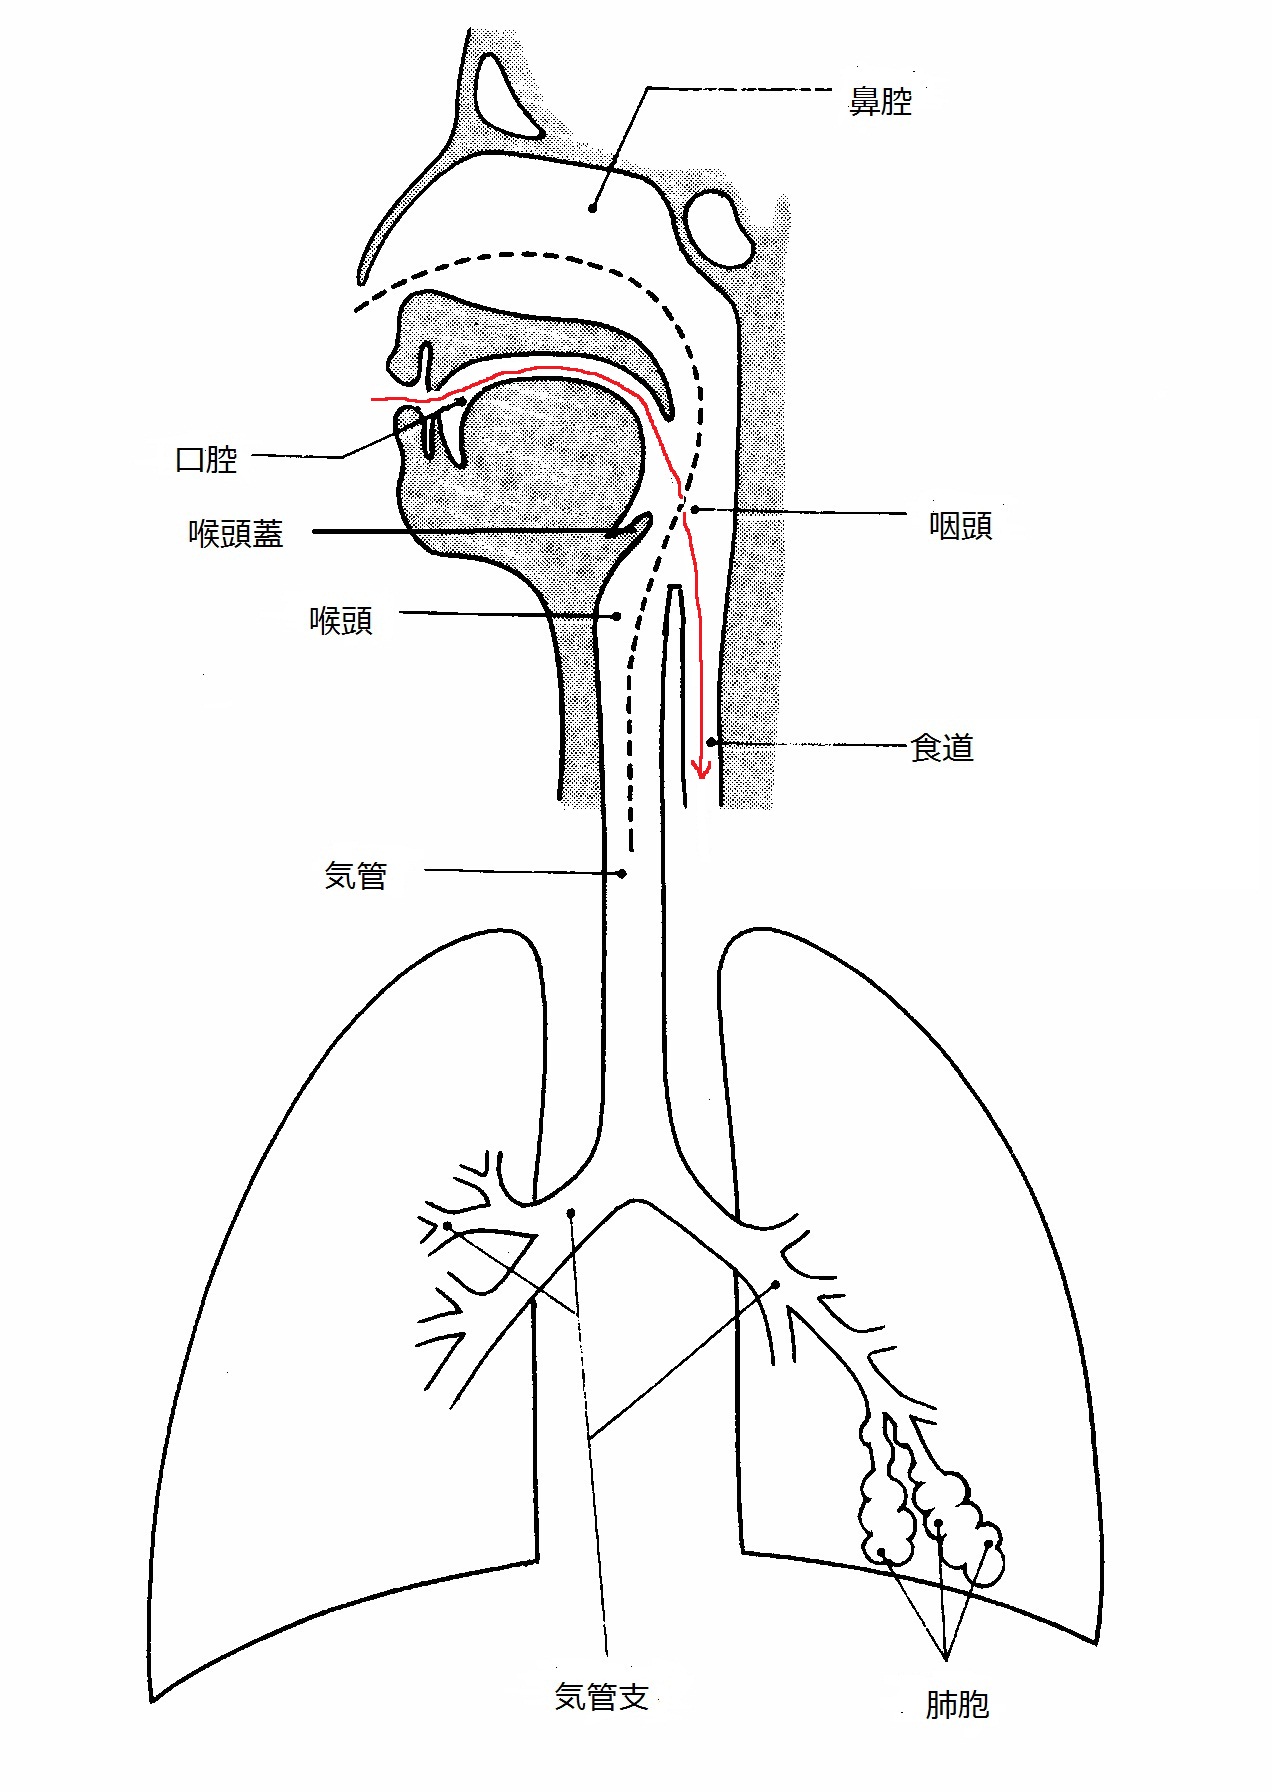 気管 と 食道 の 位置 関係